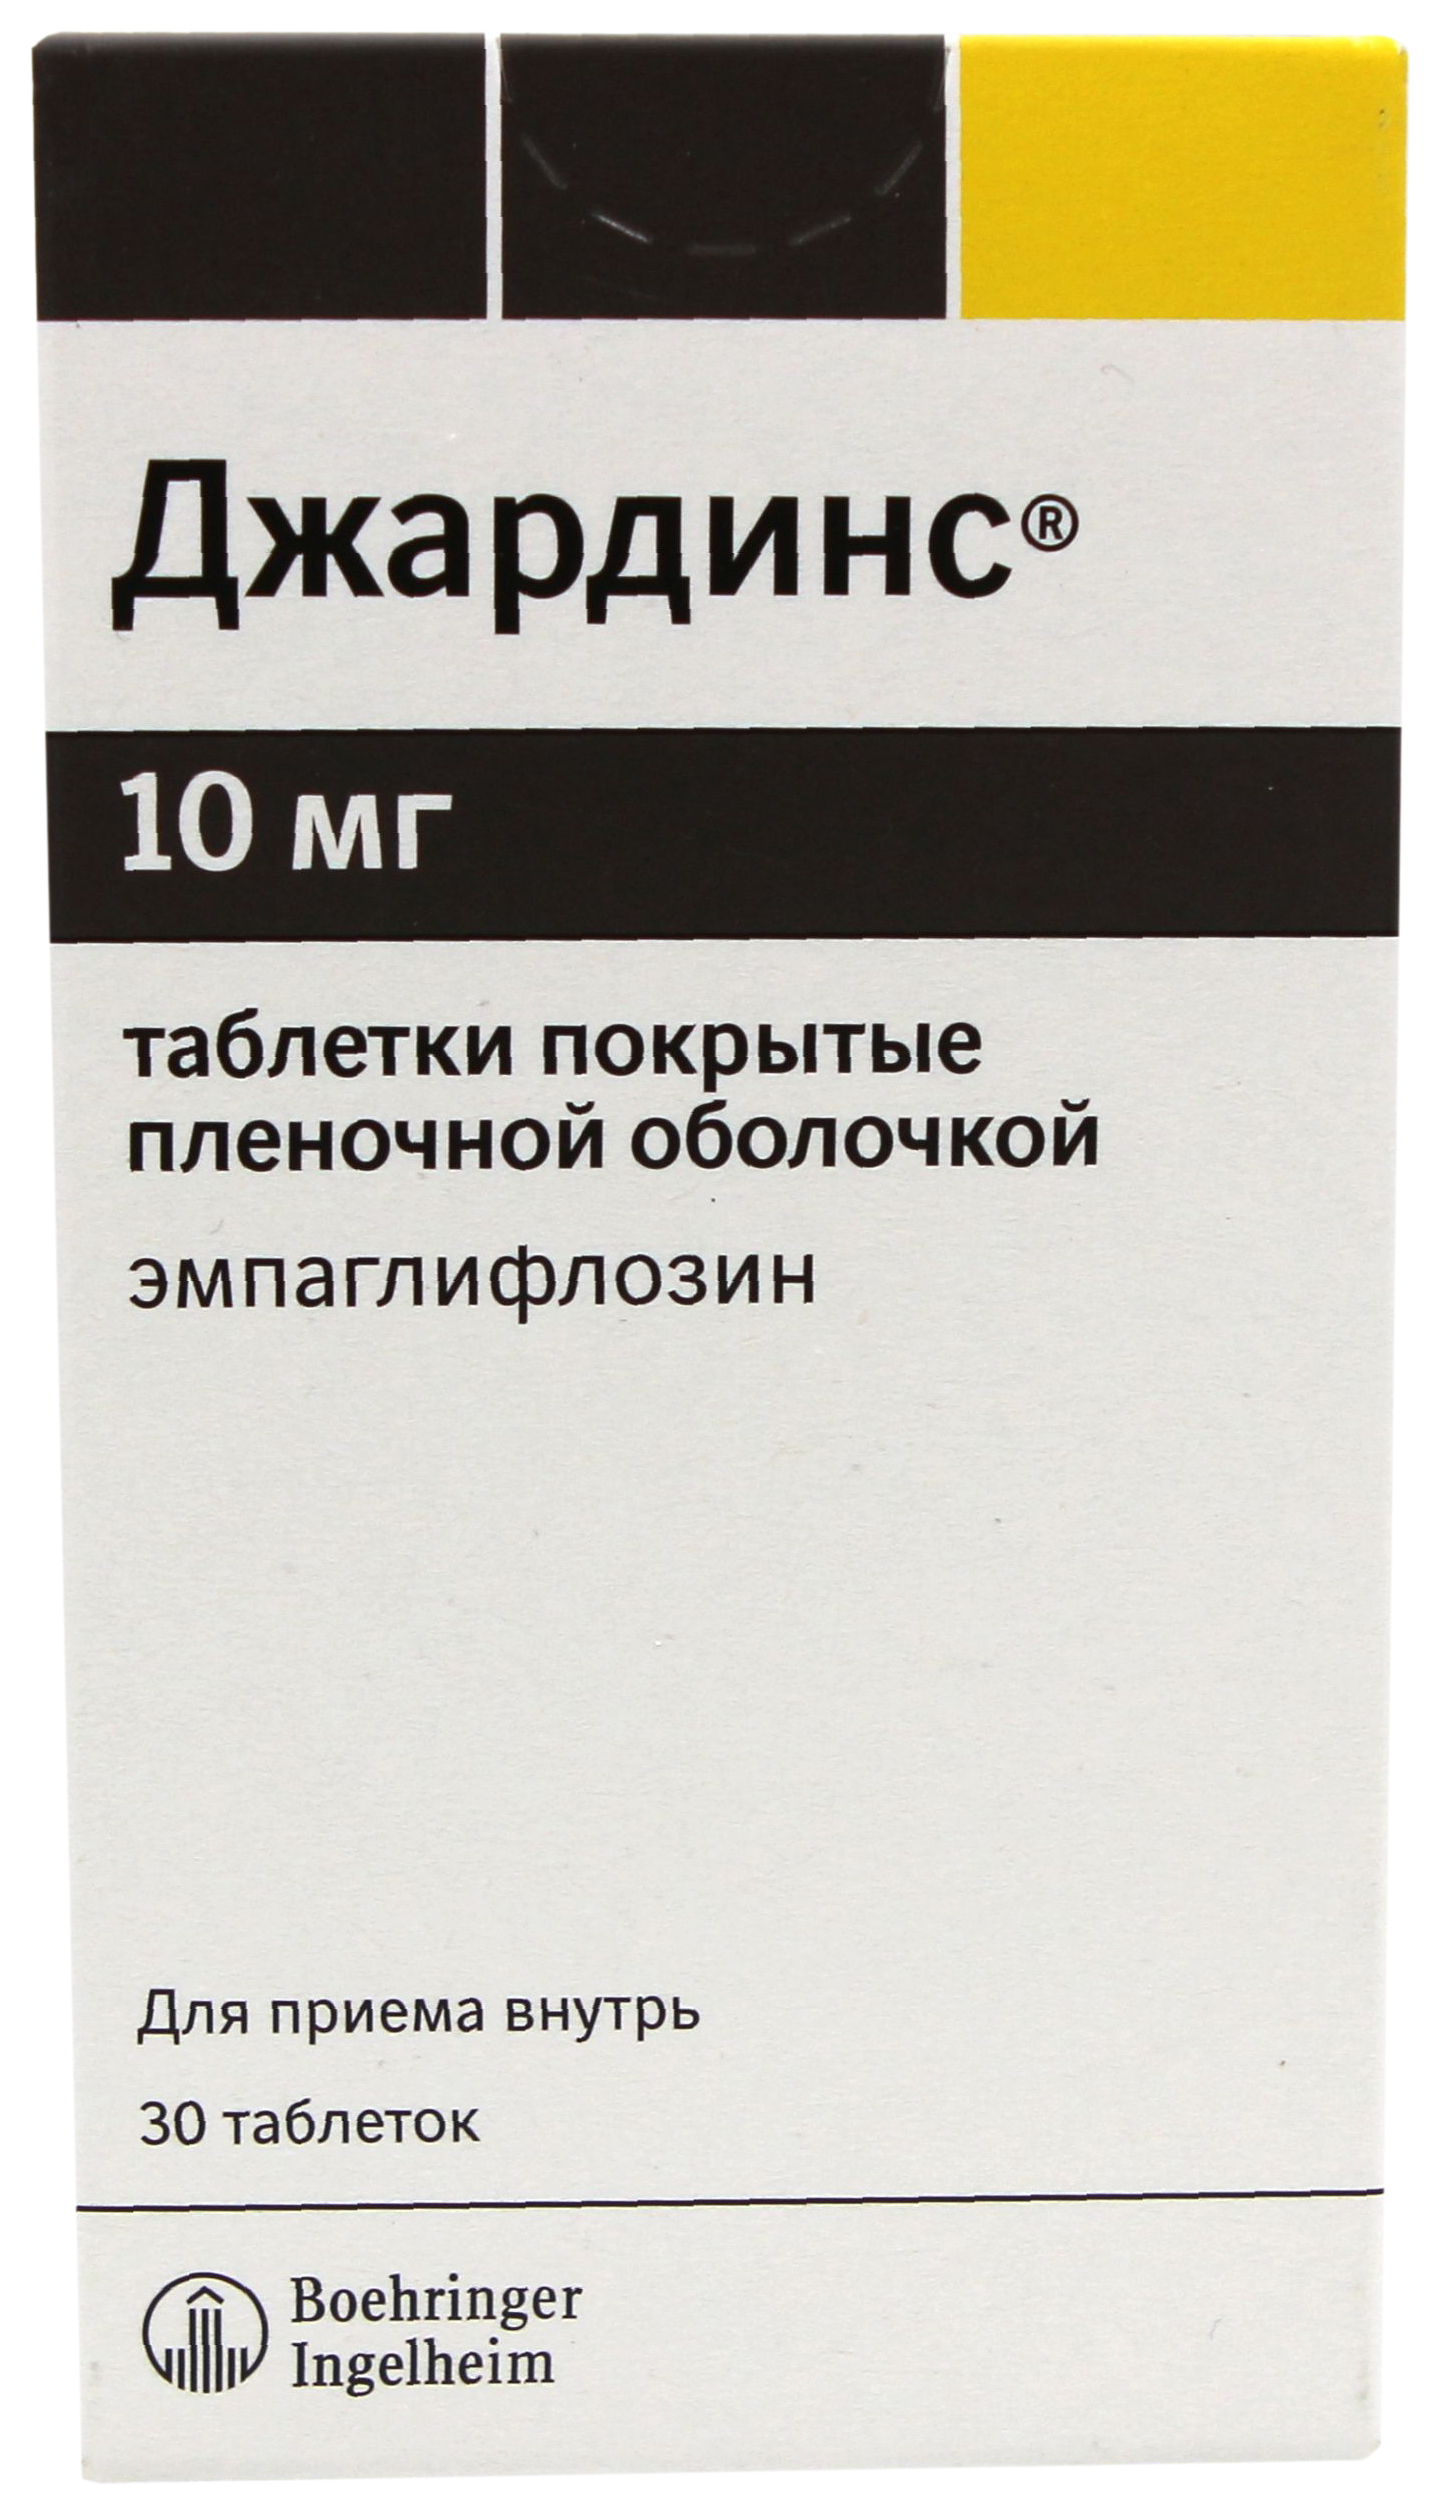 Купить Джардинс таблетки покрытые пленочной оболочкой 10 мг 30 шт., Beringer